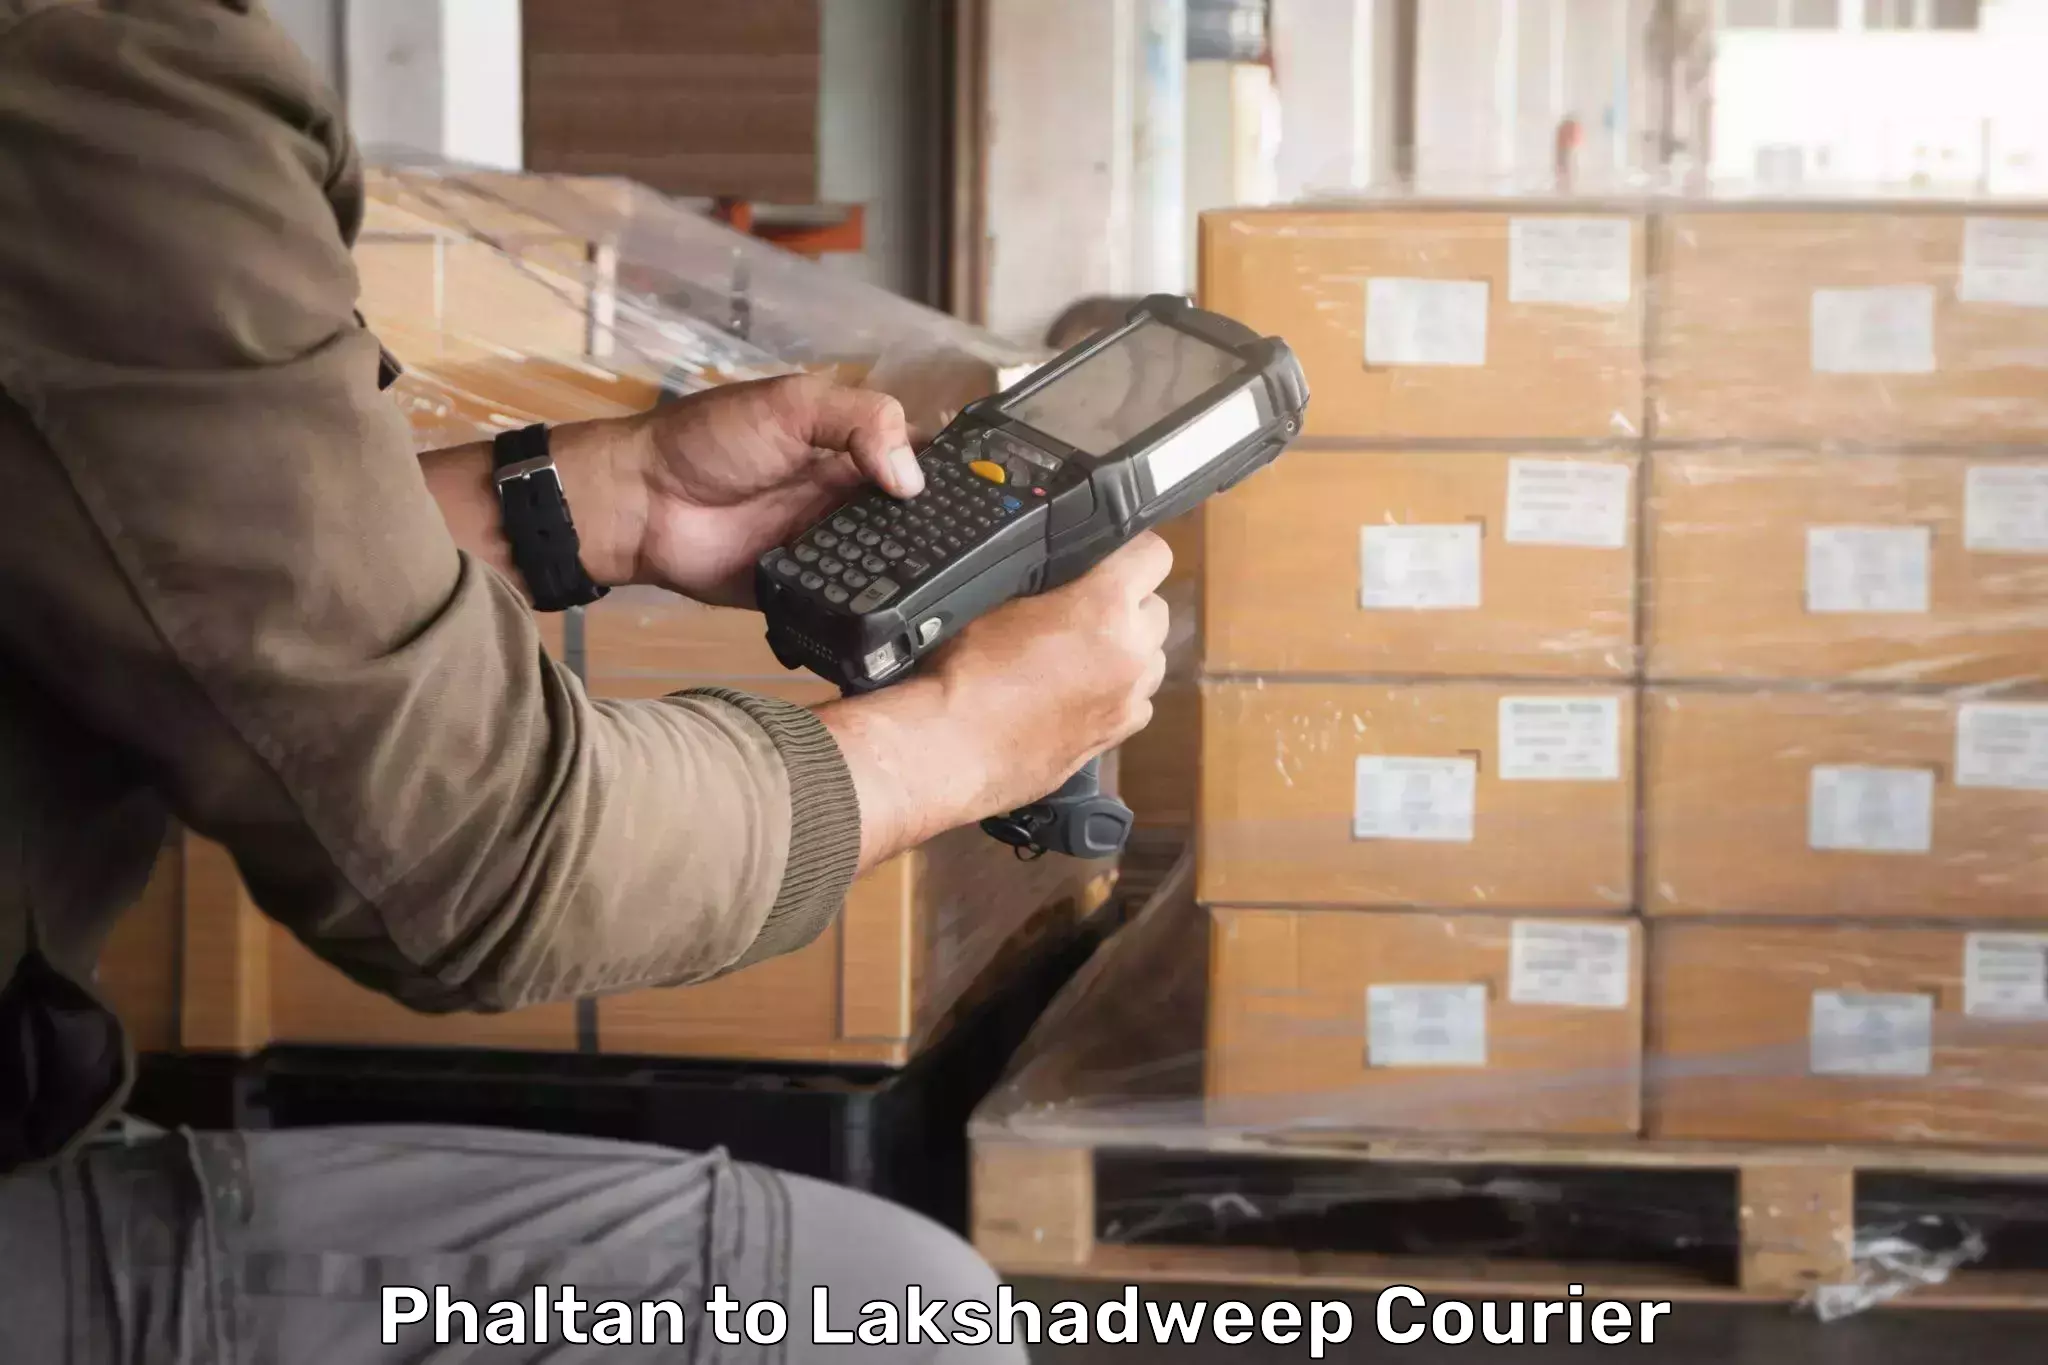 Door-to-door freight service Phaltan to Lakshadweep